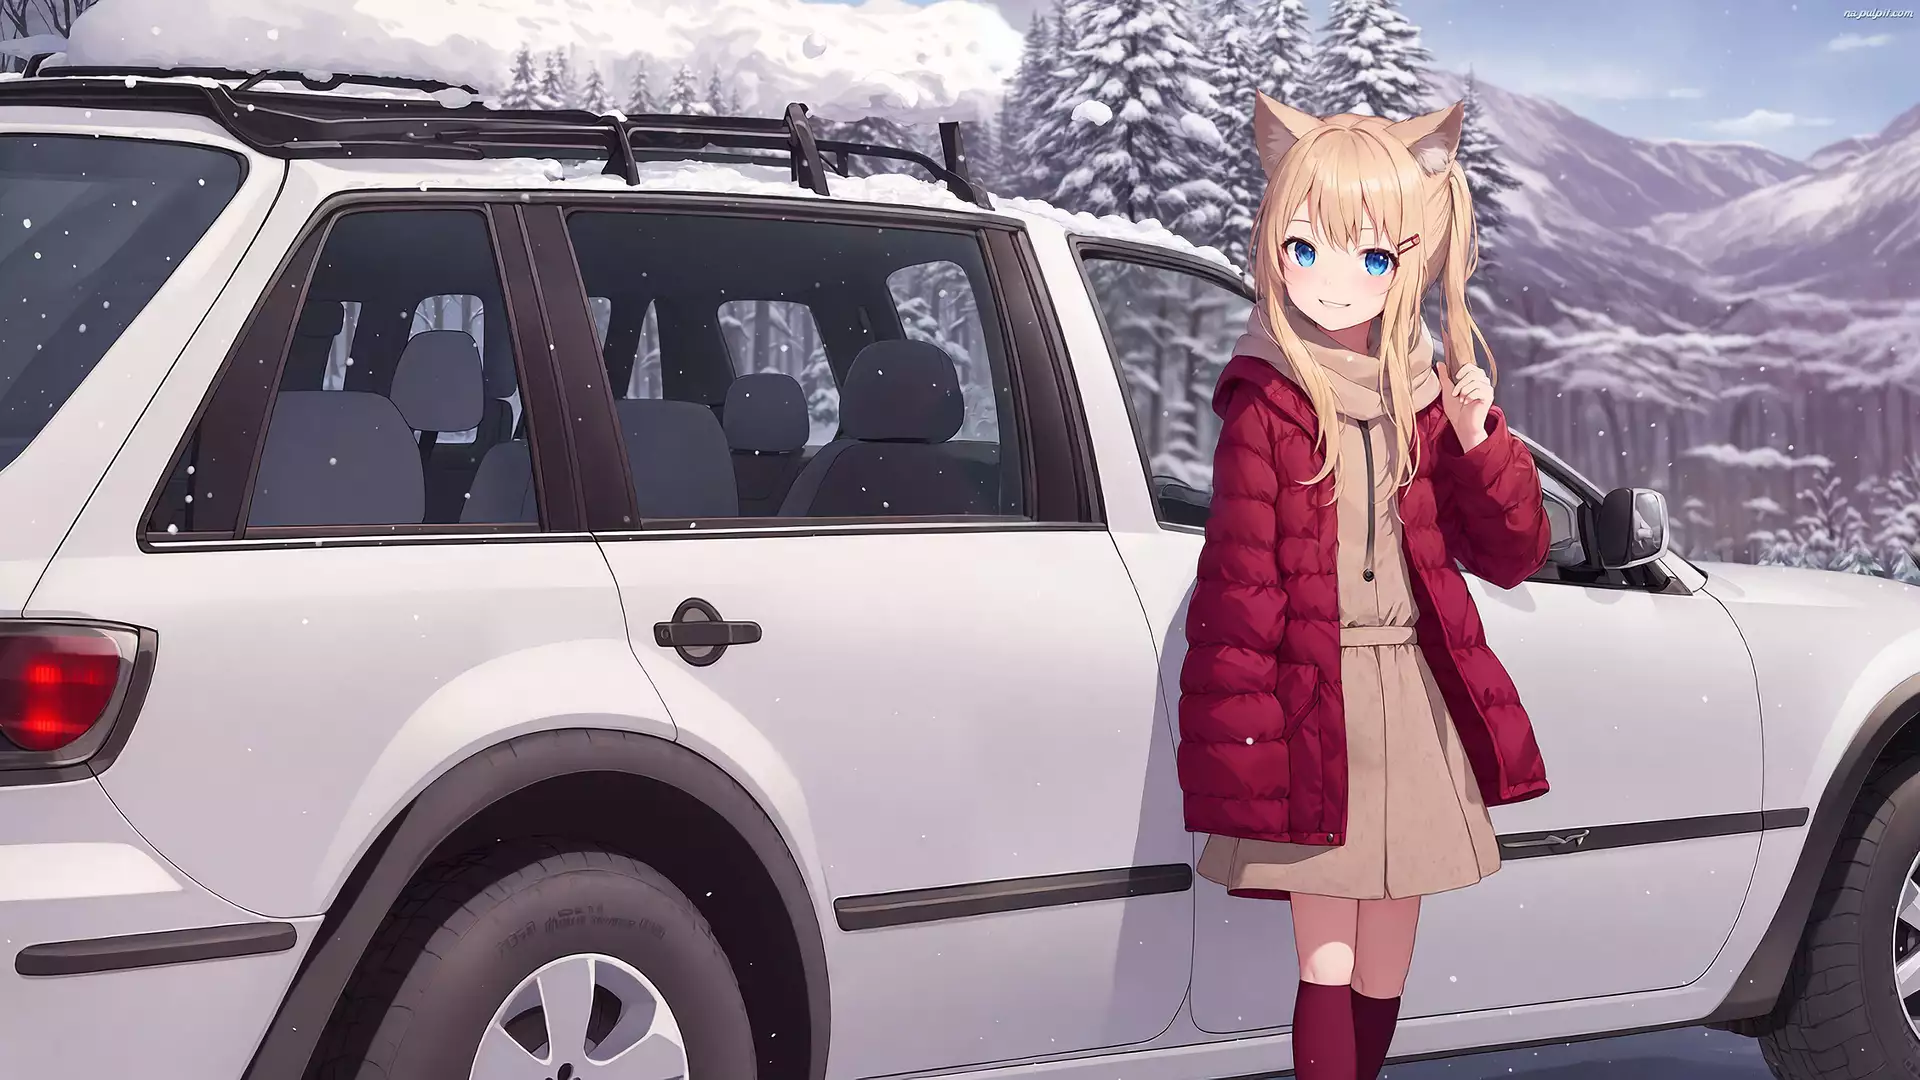 Samochód, Anime, Uszy, Dziewczyna, Zima